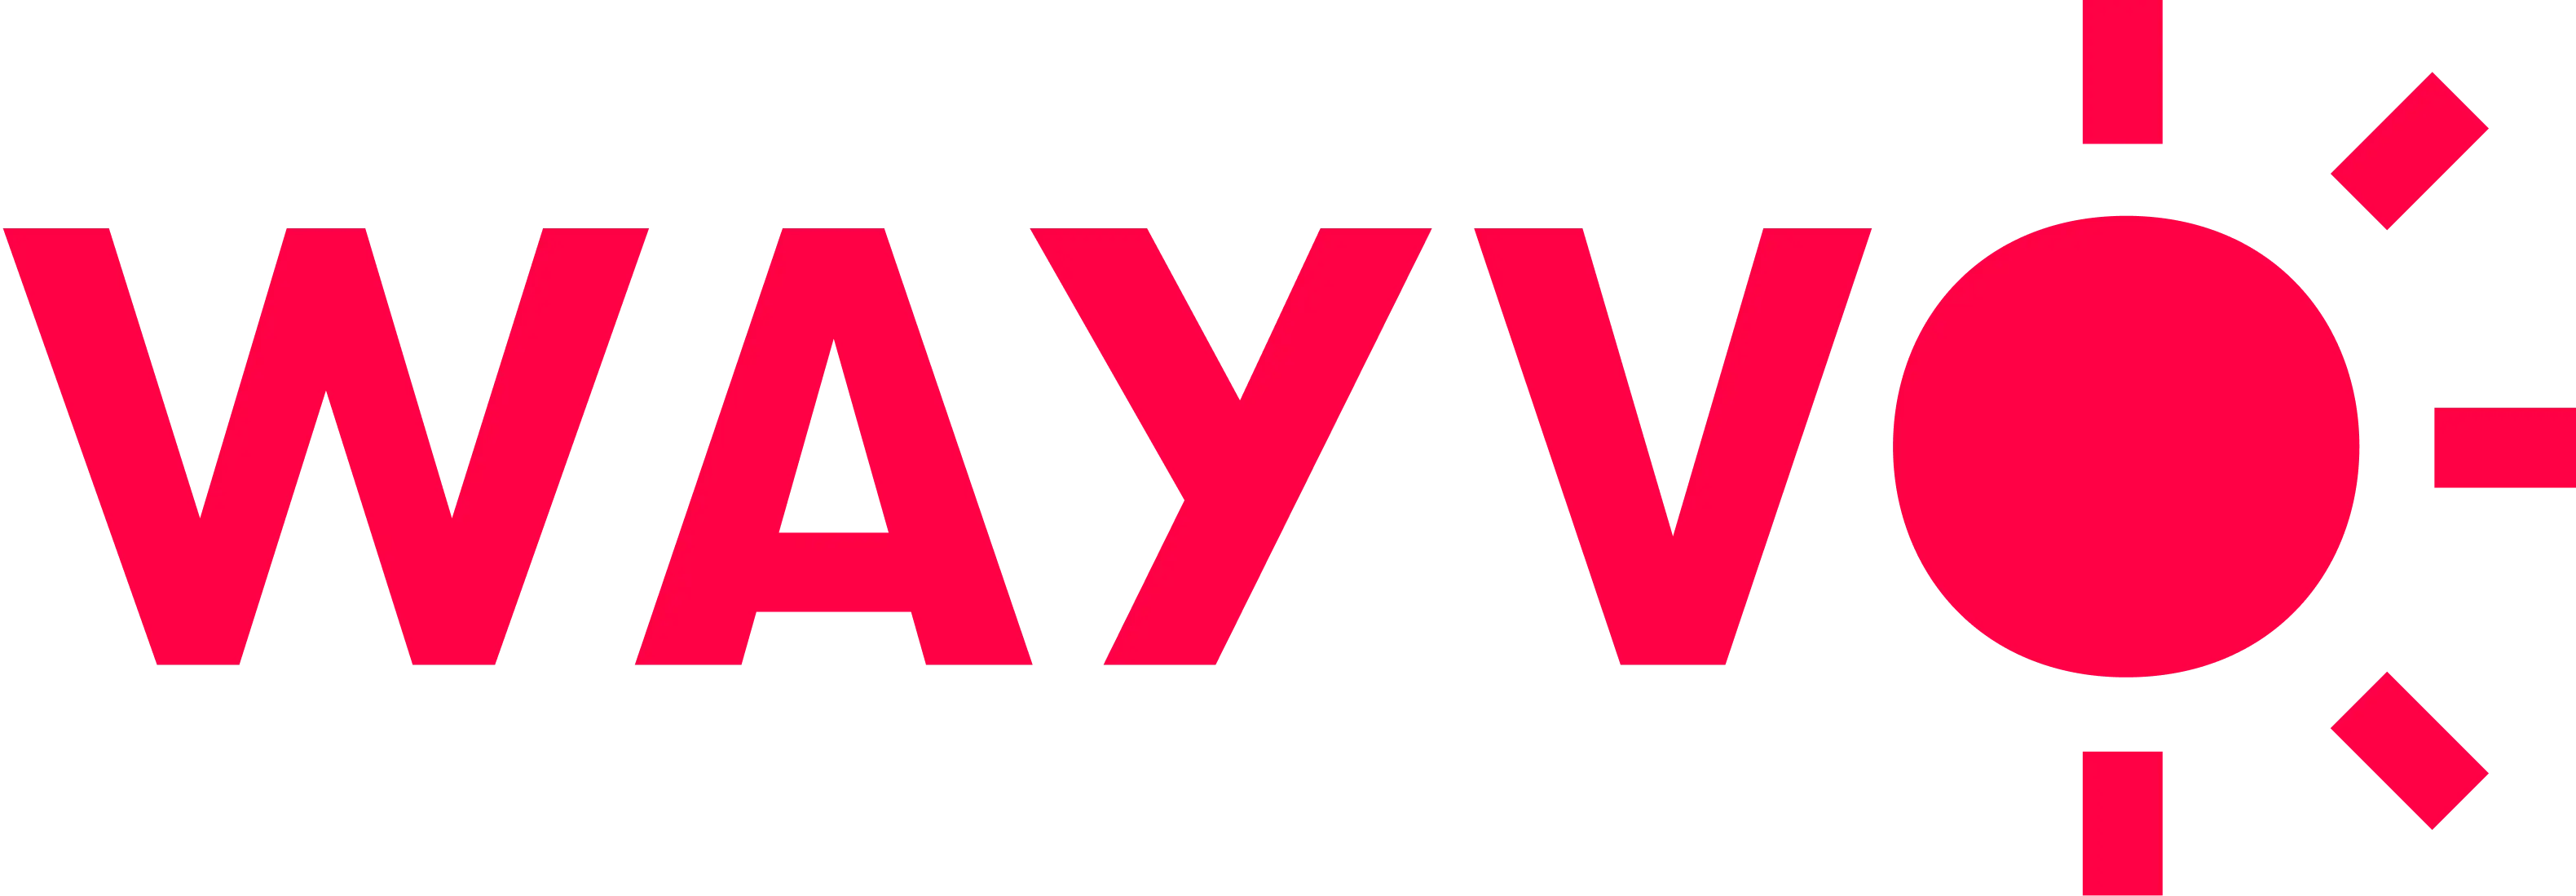 The logo of the WAYVO company.